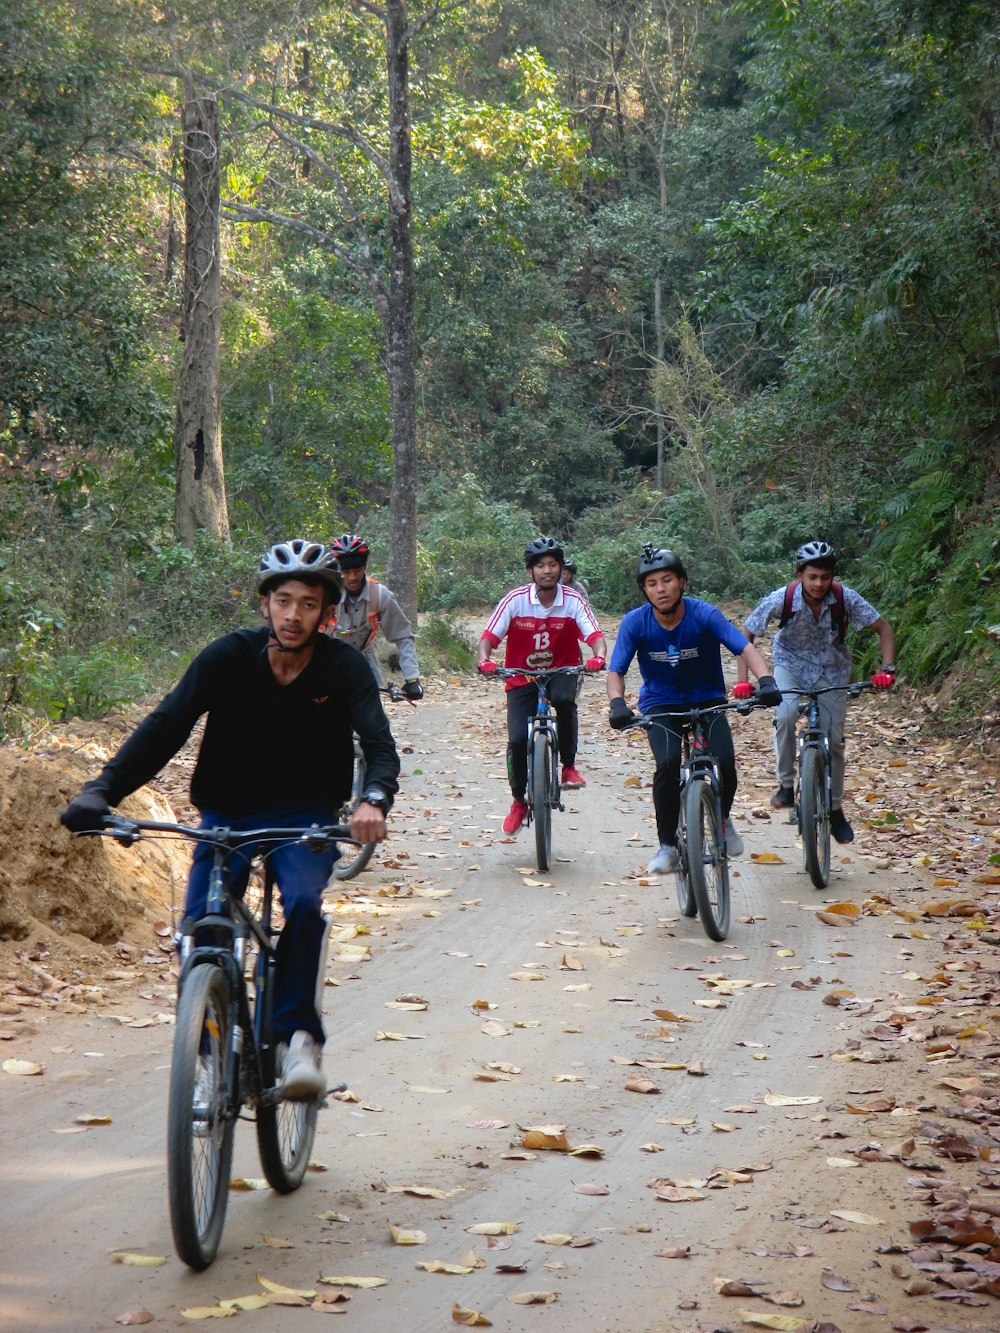 Un grupo de personas montando en bicicleta por un camino de tierra